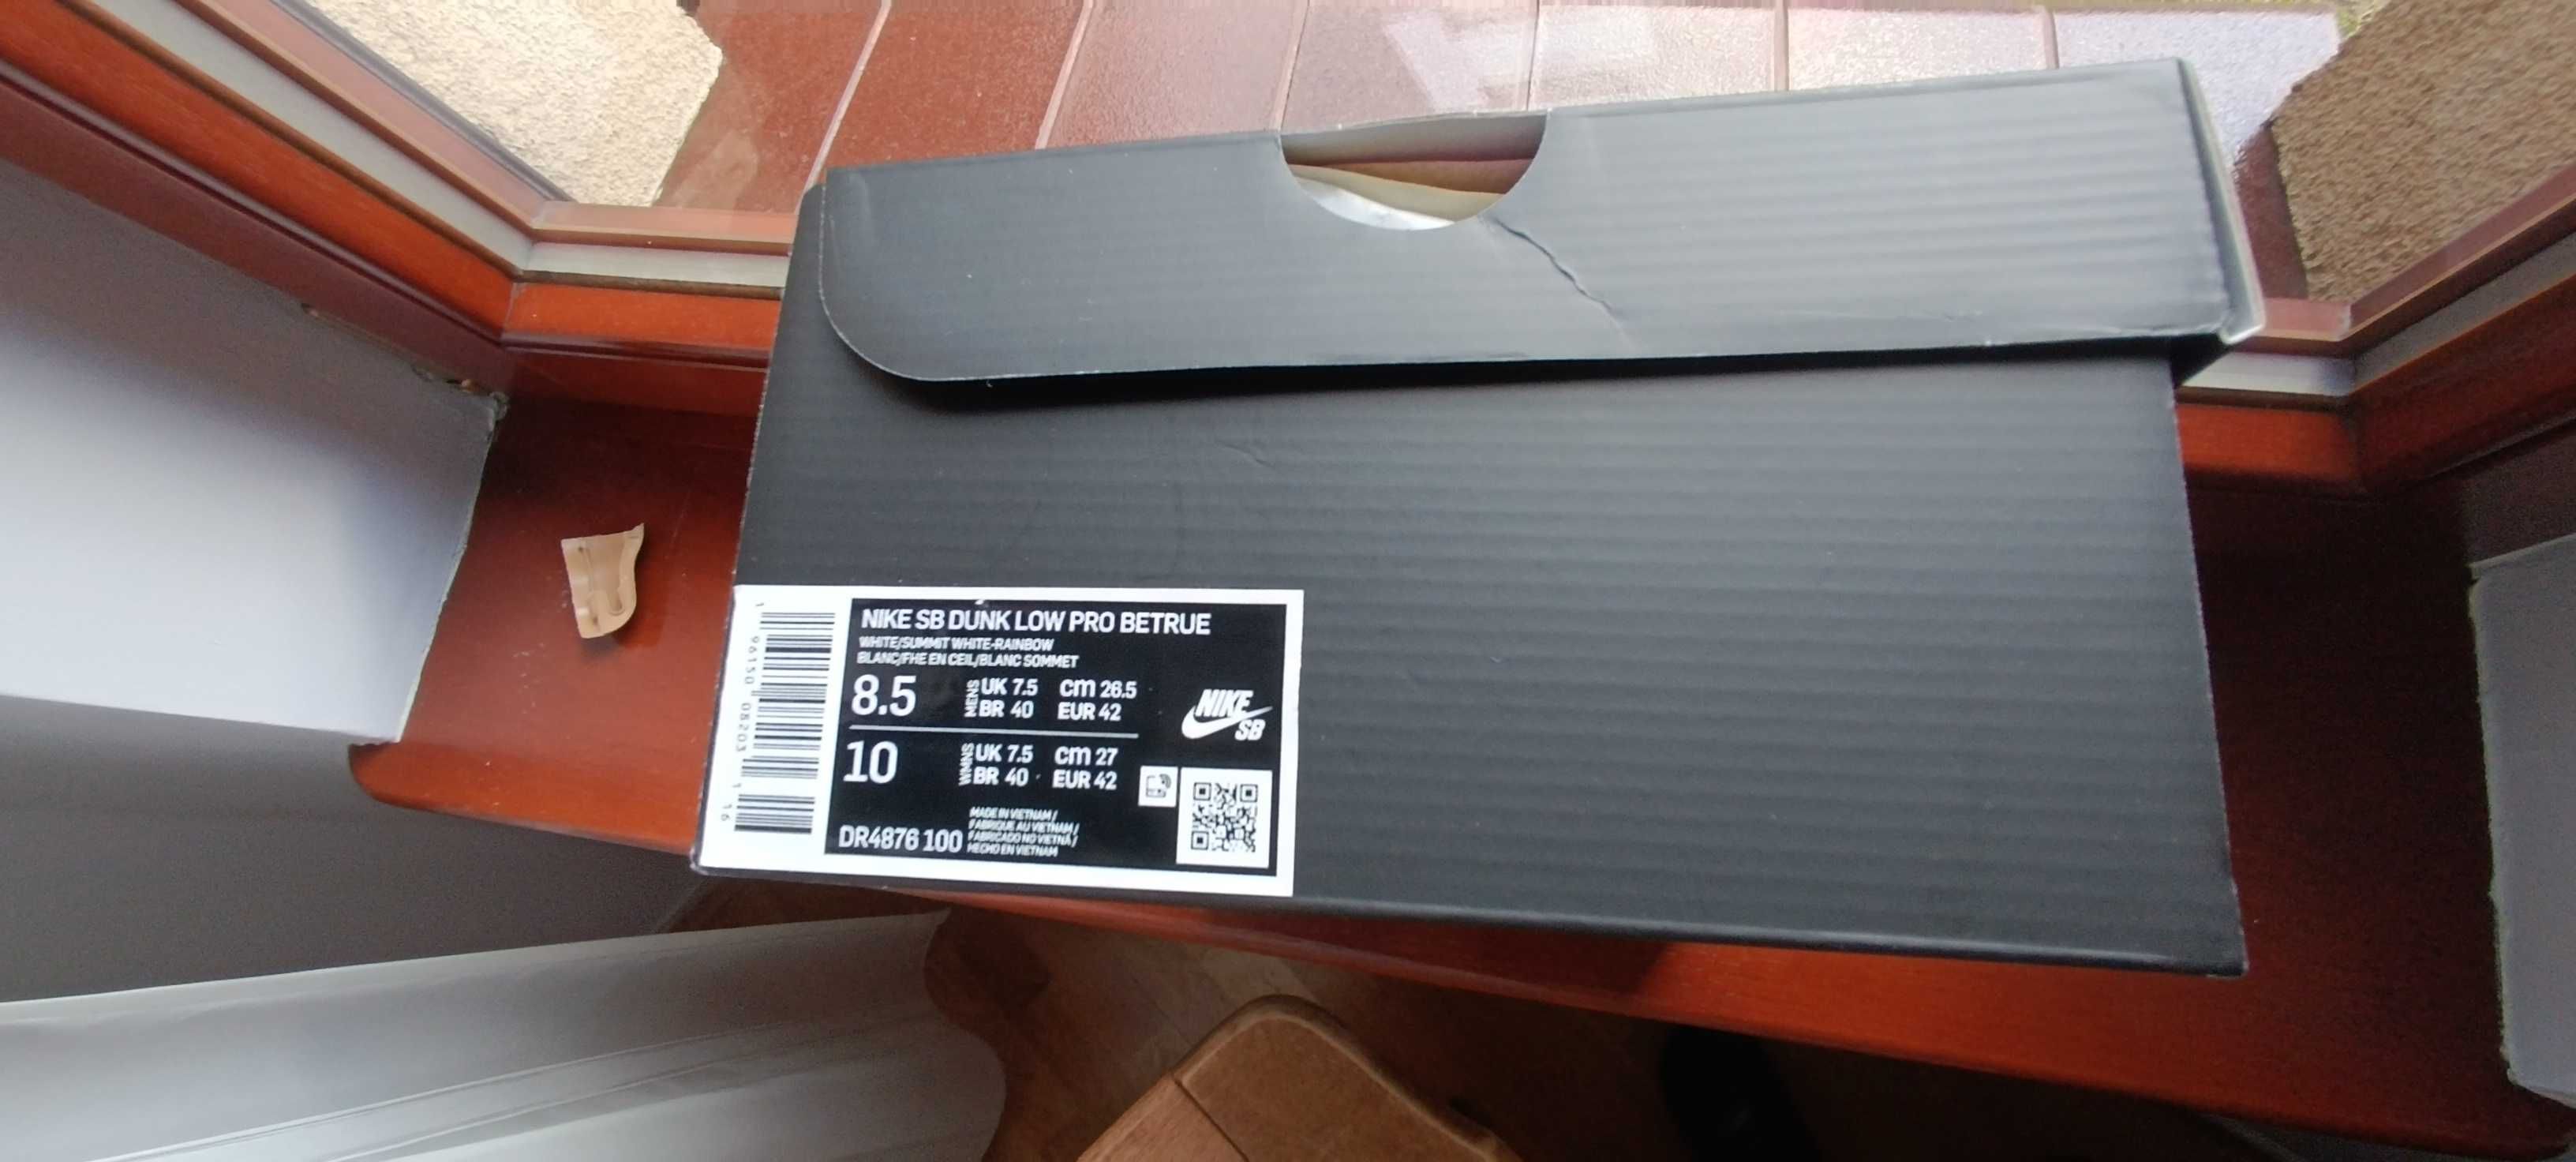 (r. Eur 42/ us 8,5) Nike SB Dunk Low Pro Be True kod Nike DR4876,-100